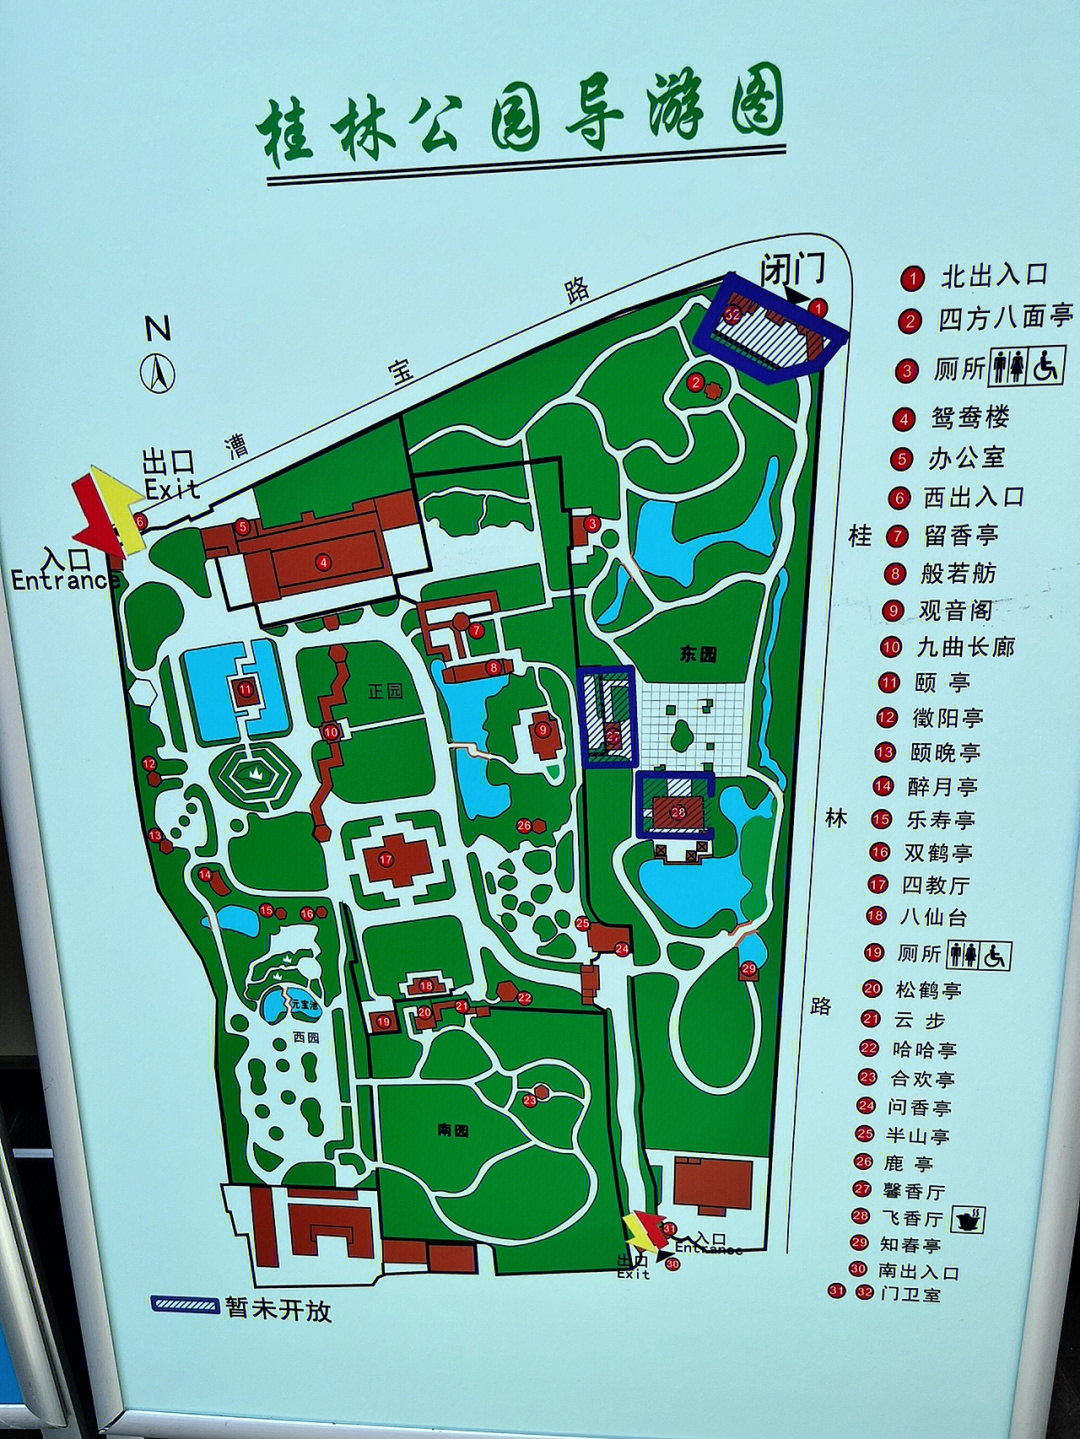 十一不离沪就去桂林公园赏桂喝茶吧